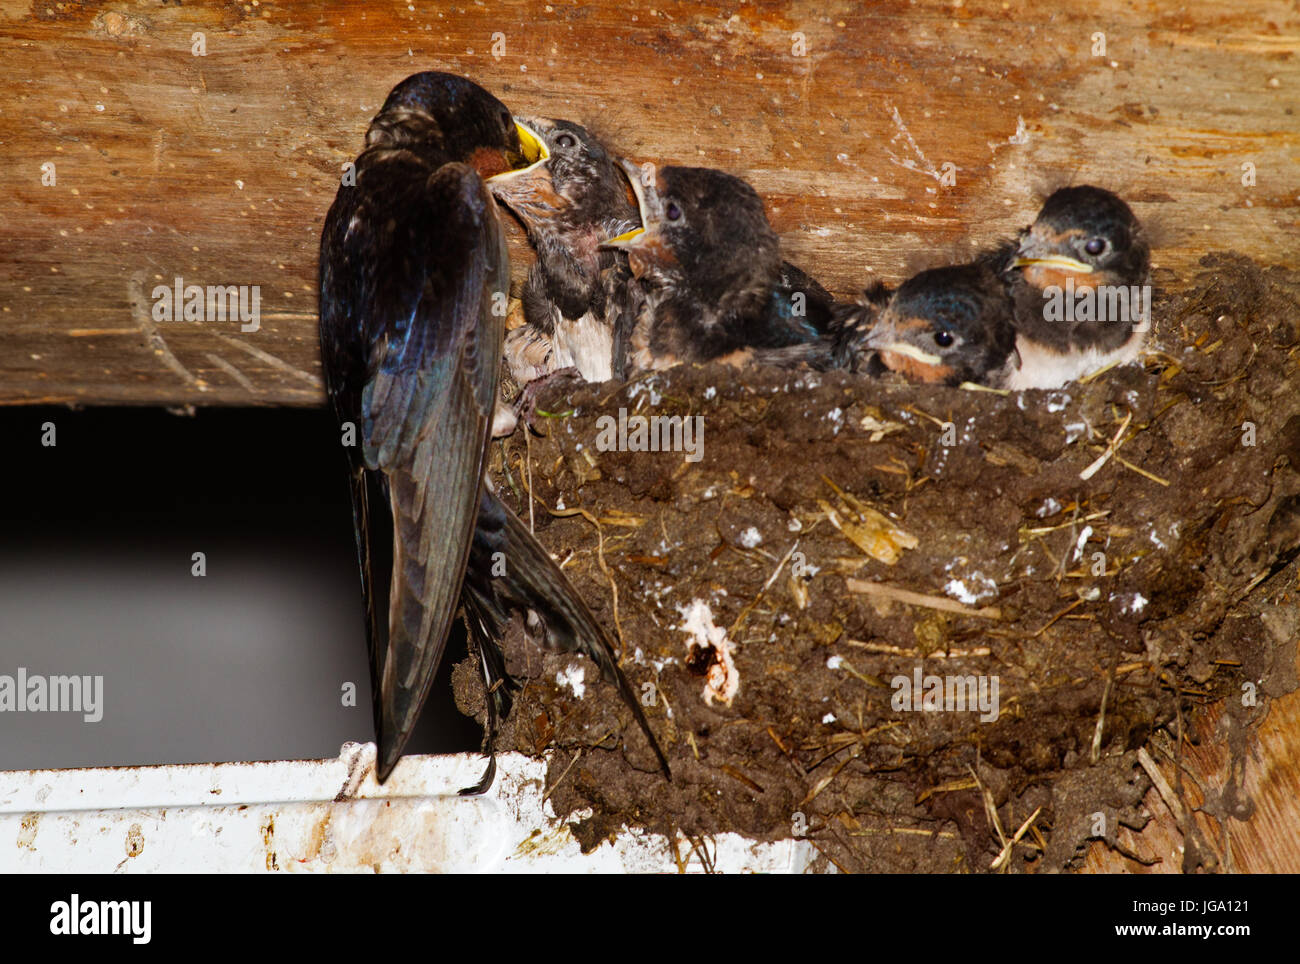 Hirondelle nourrir les jeunes dans un nid dans une grange Banque D'Images